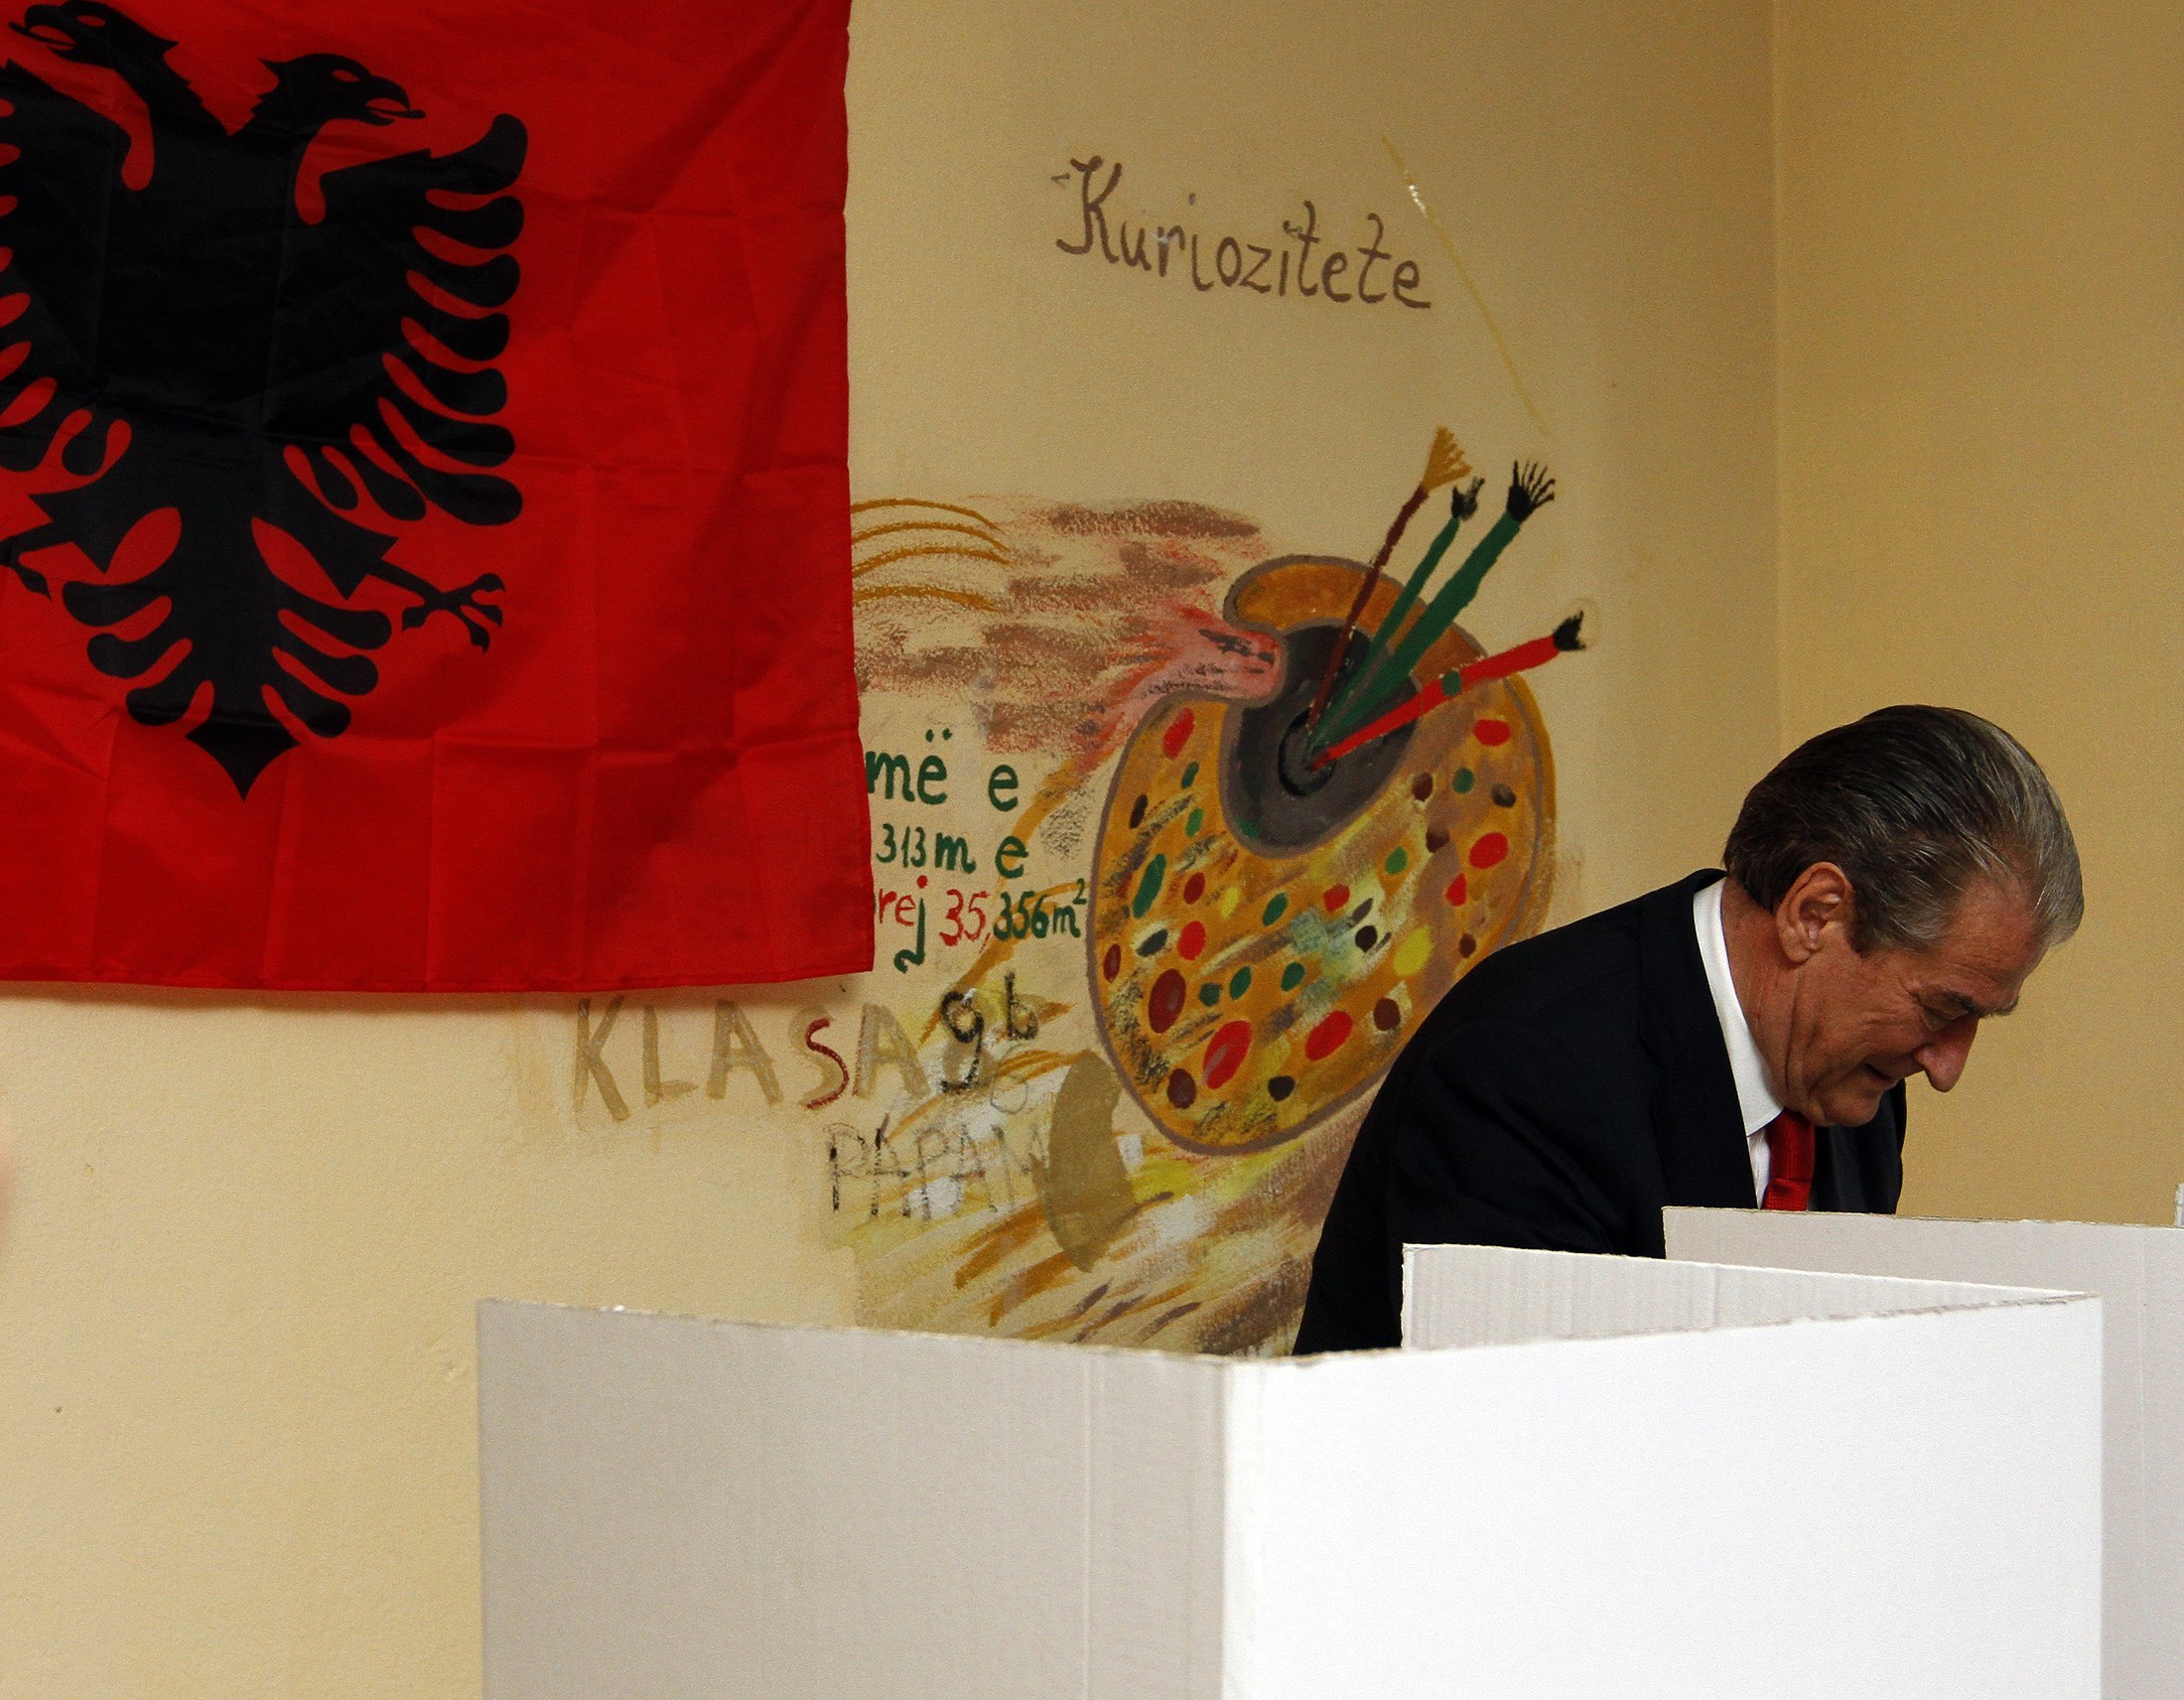 Έγινε κι αυτό! Δύο νικητές στις αλβανικές εκλογές!